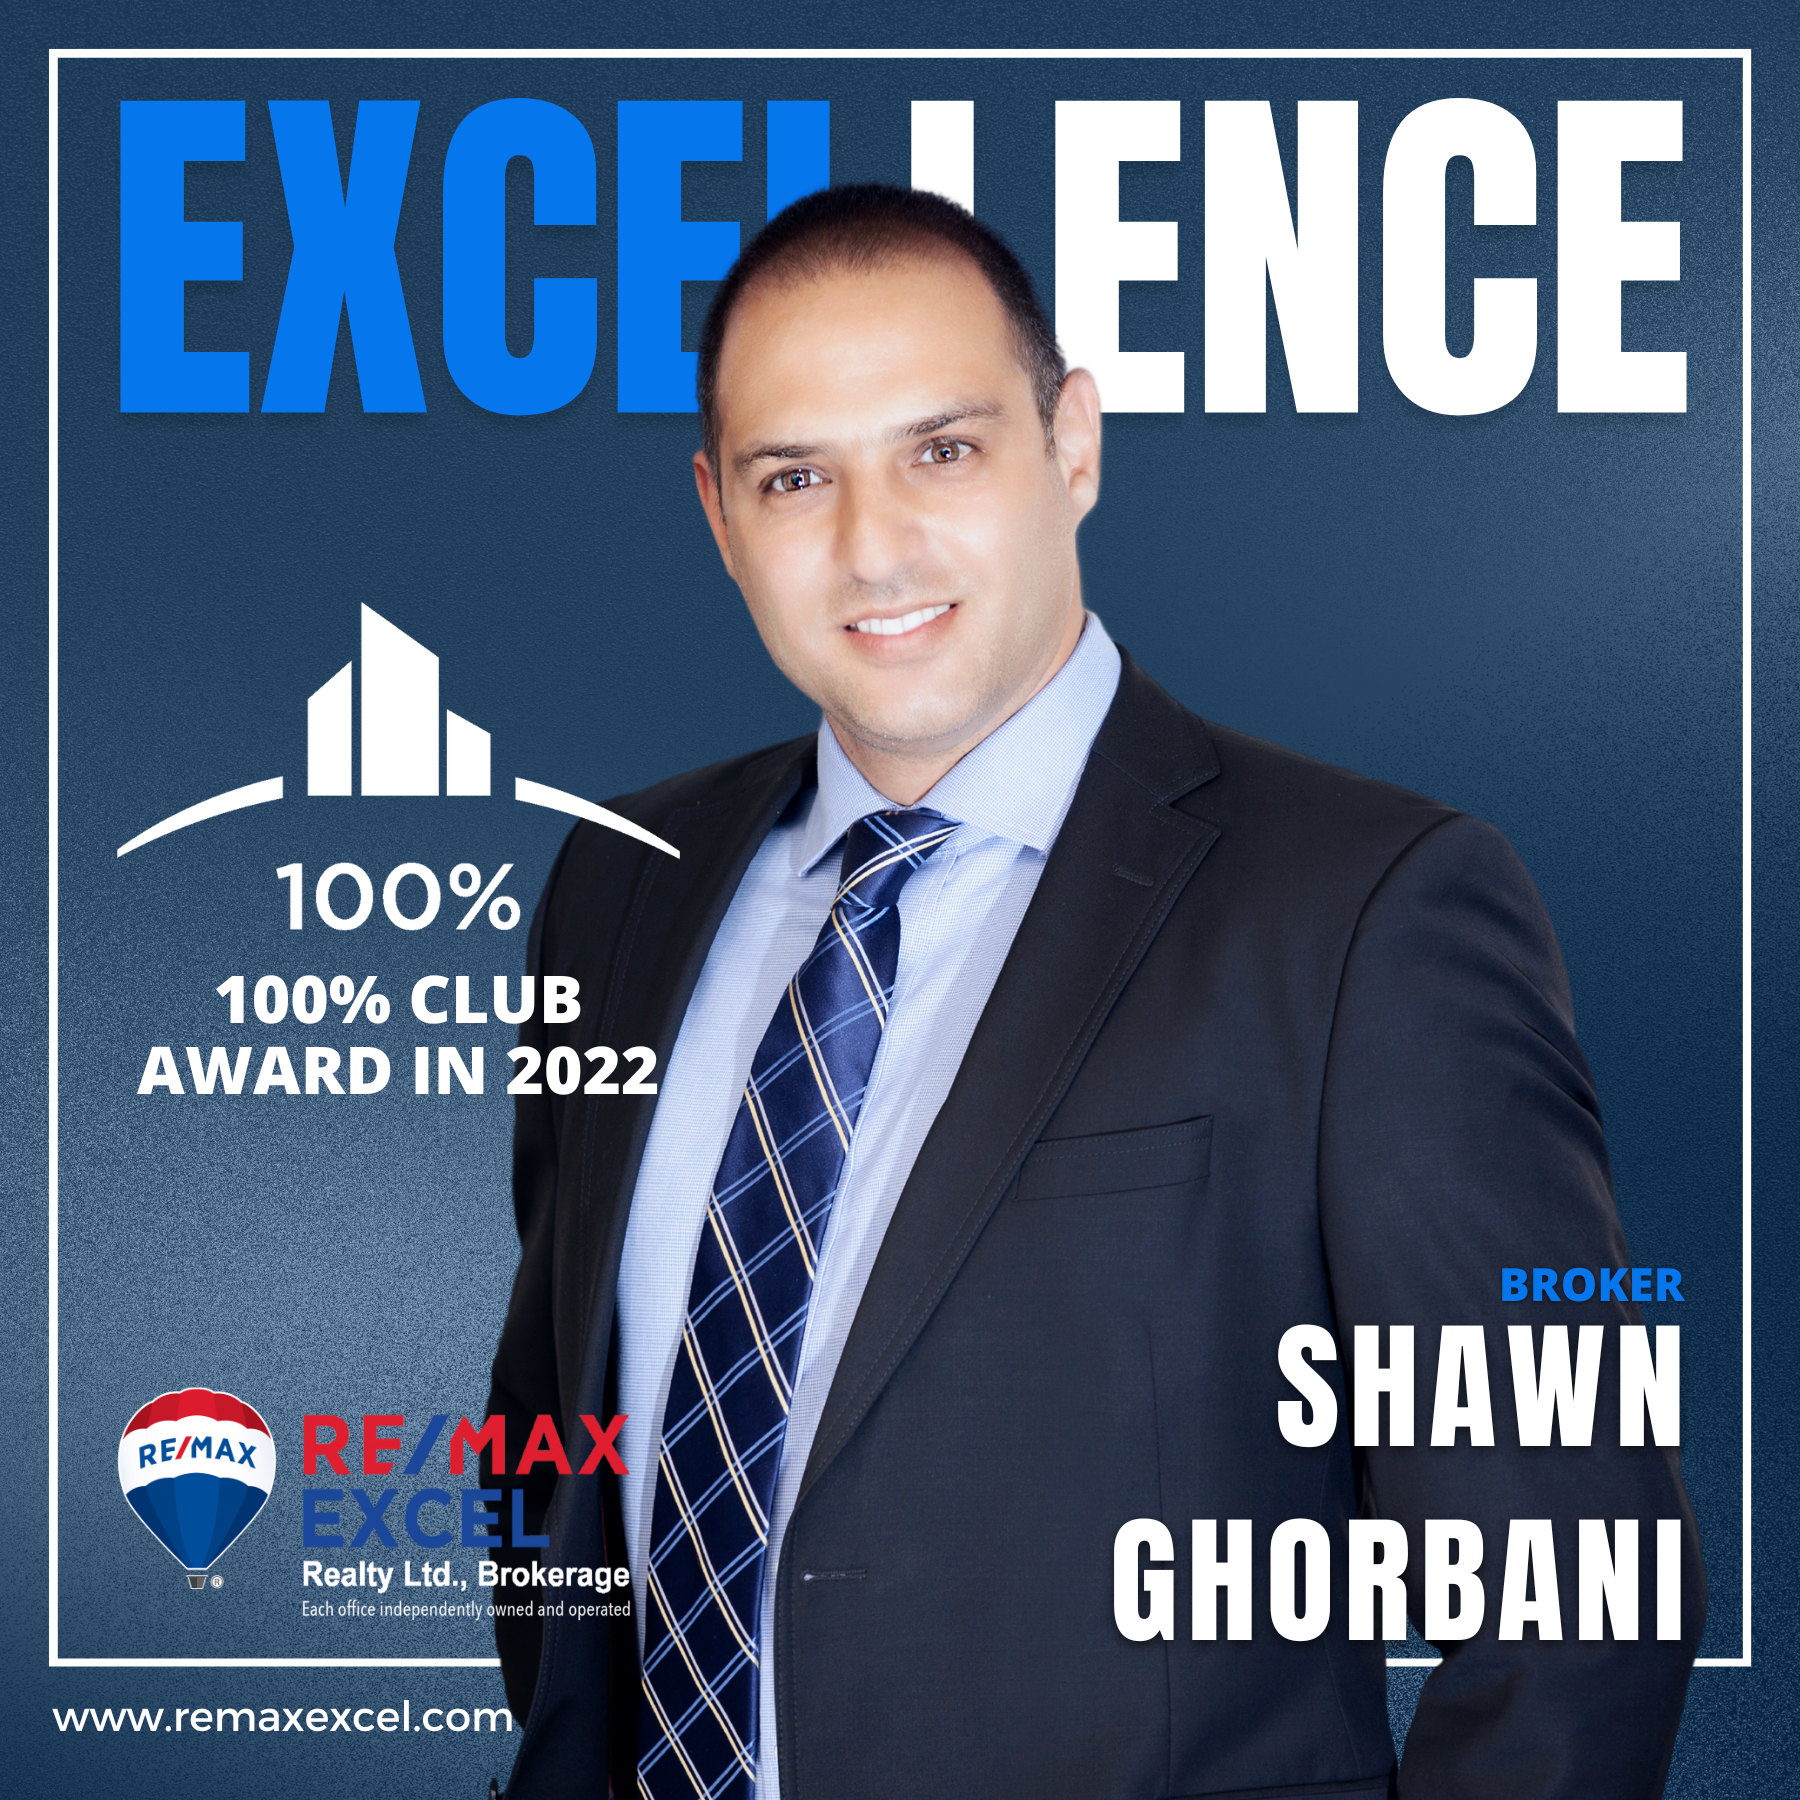 36 - Shawn Ghorbani